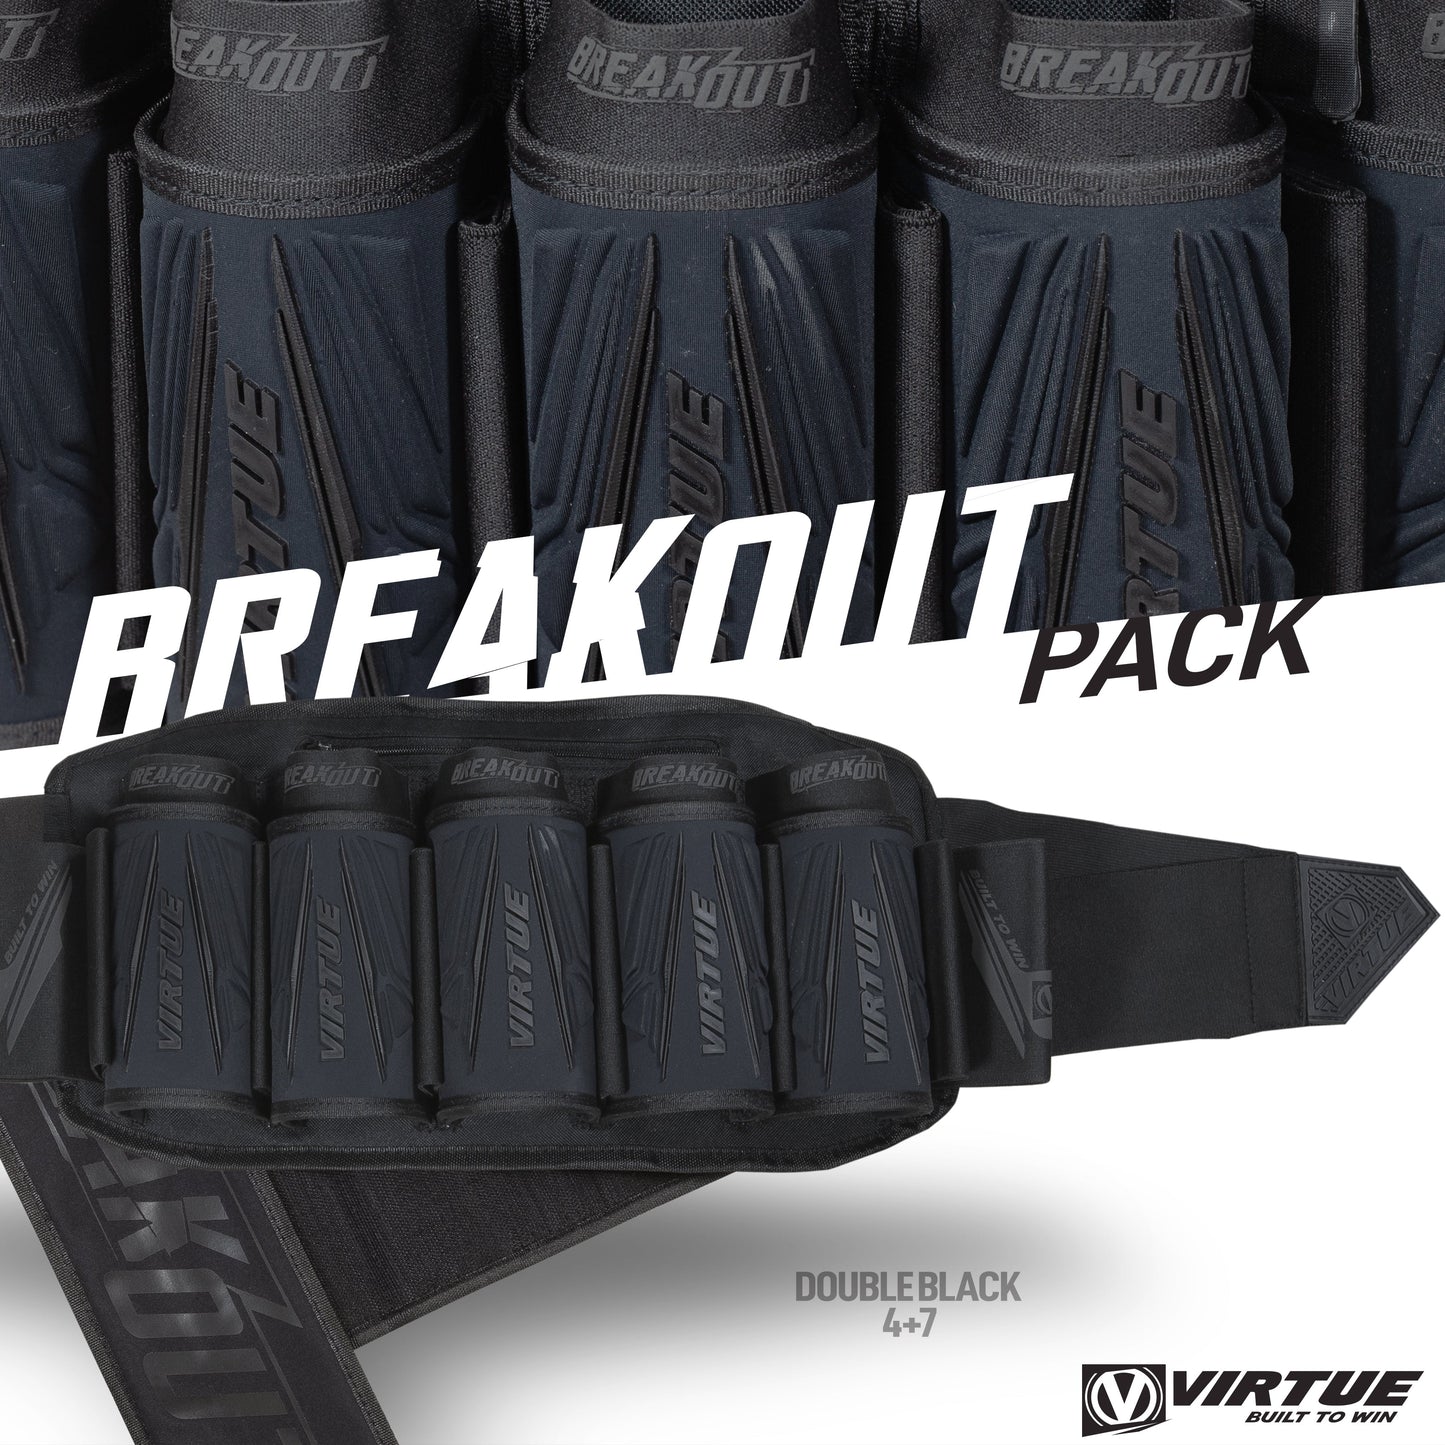 Virtue Breakout V2 Strapless Pack - All Black 5+8